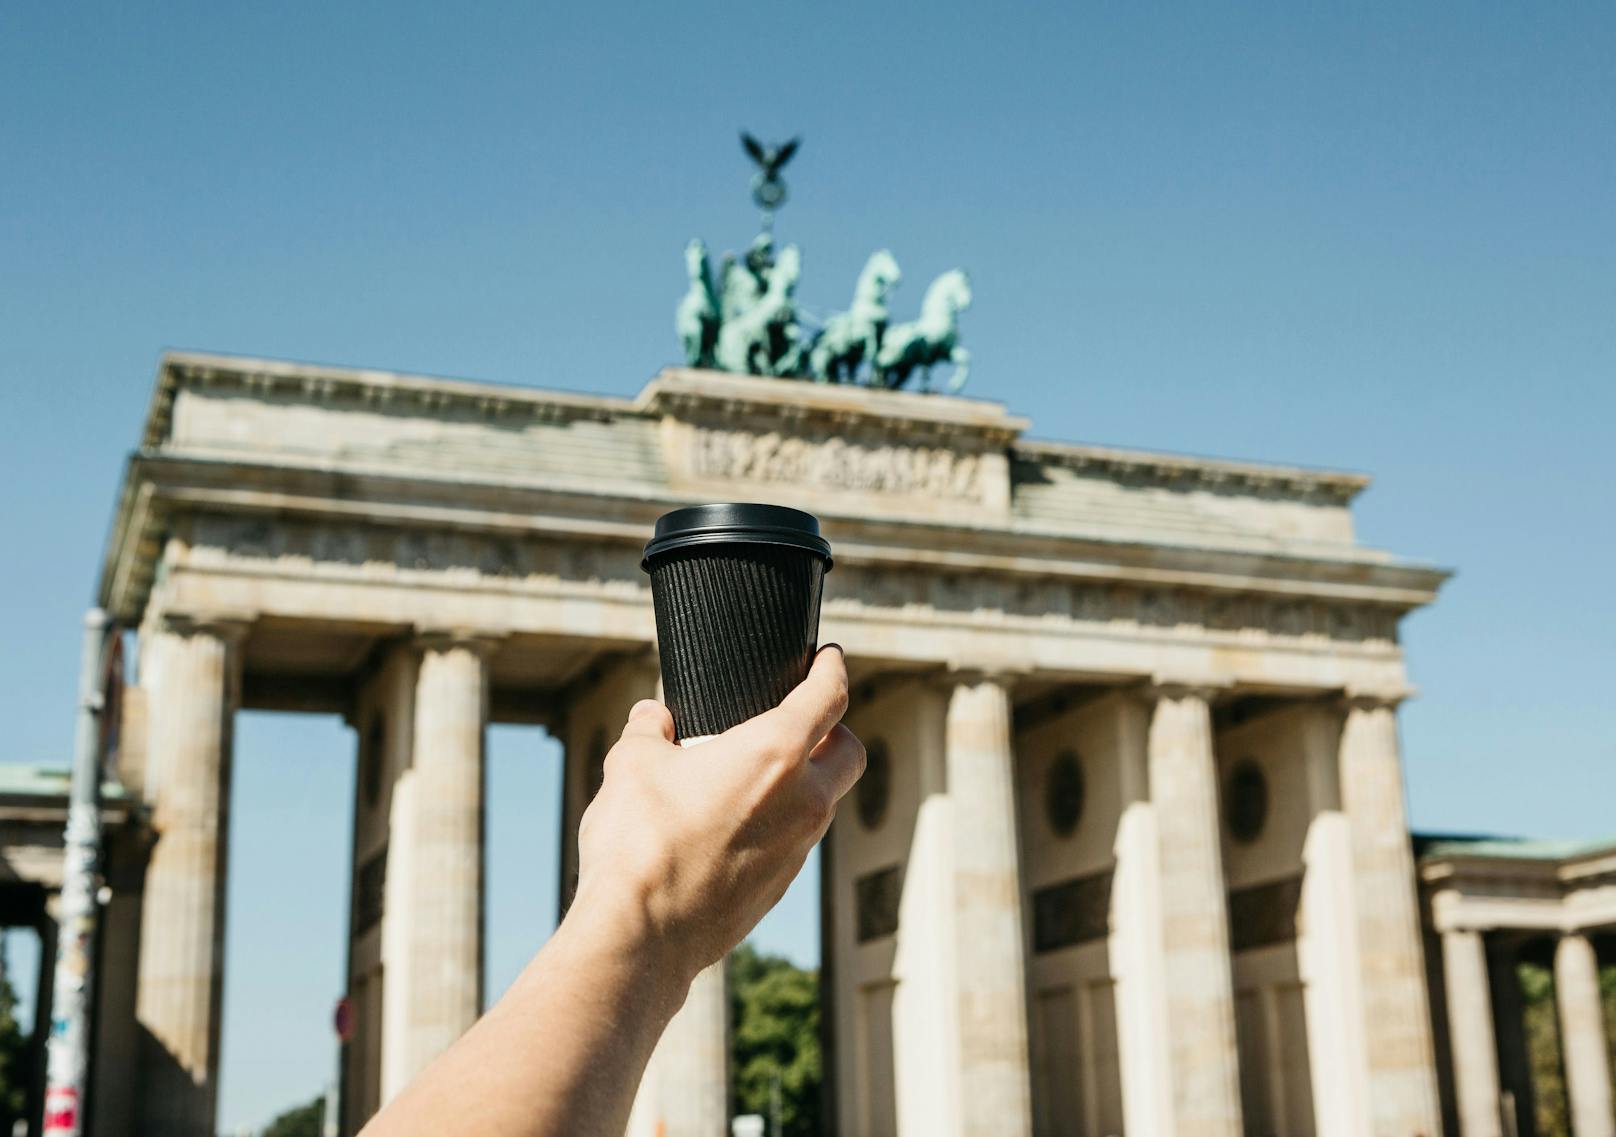 Wesentlich günstiger ist ein Cappuccino hingegen in <strong>Berlin</strong>. In der deutschen Hauptstadt werden dafür durchschnittlich<strong> 2,80 Euro</strong> fällig.